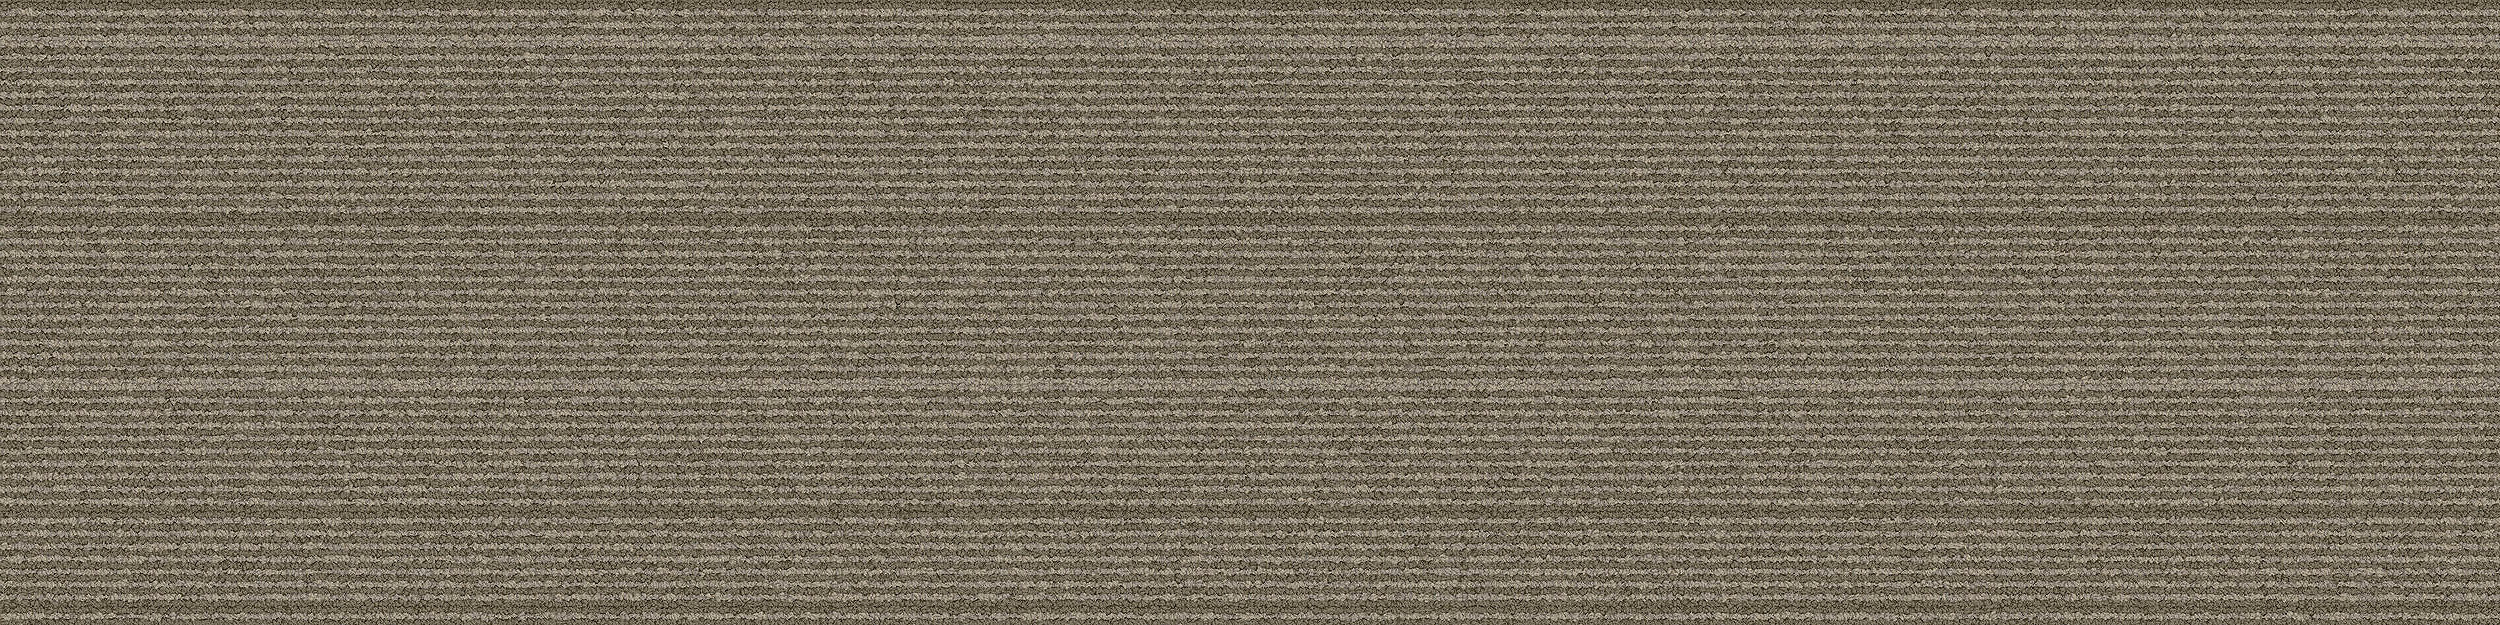 PH211 Carpet Tile In Olive image number 9